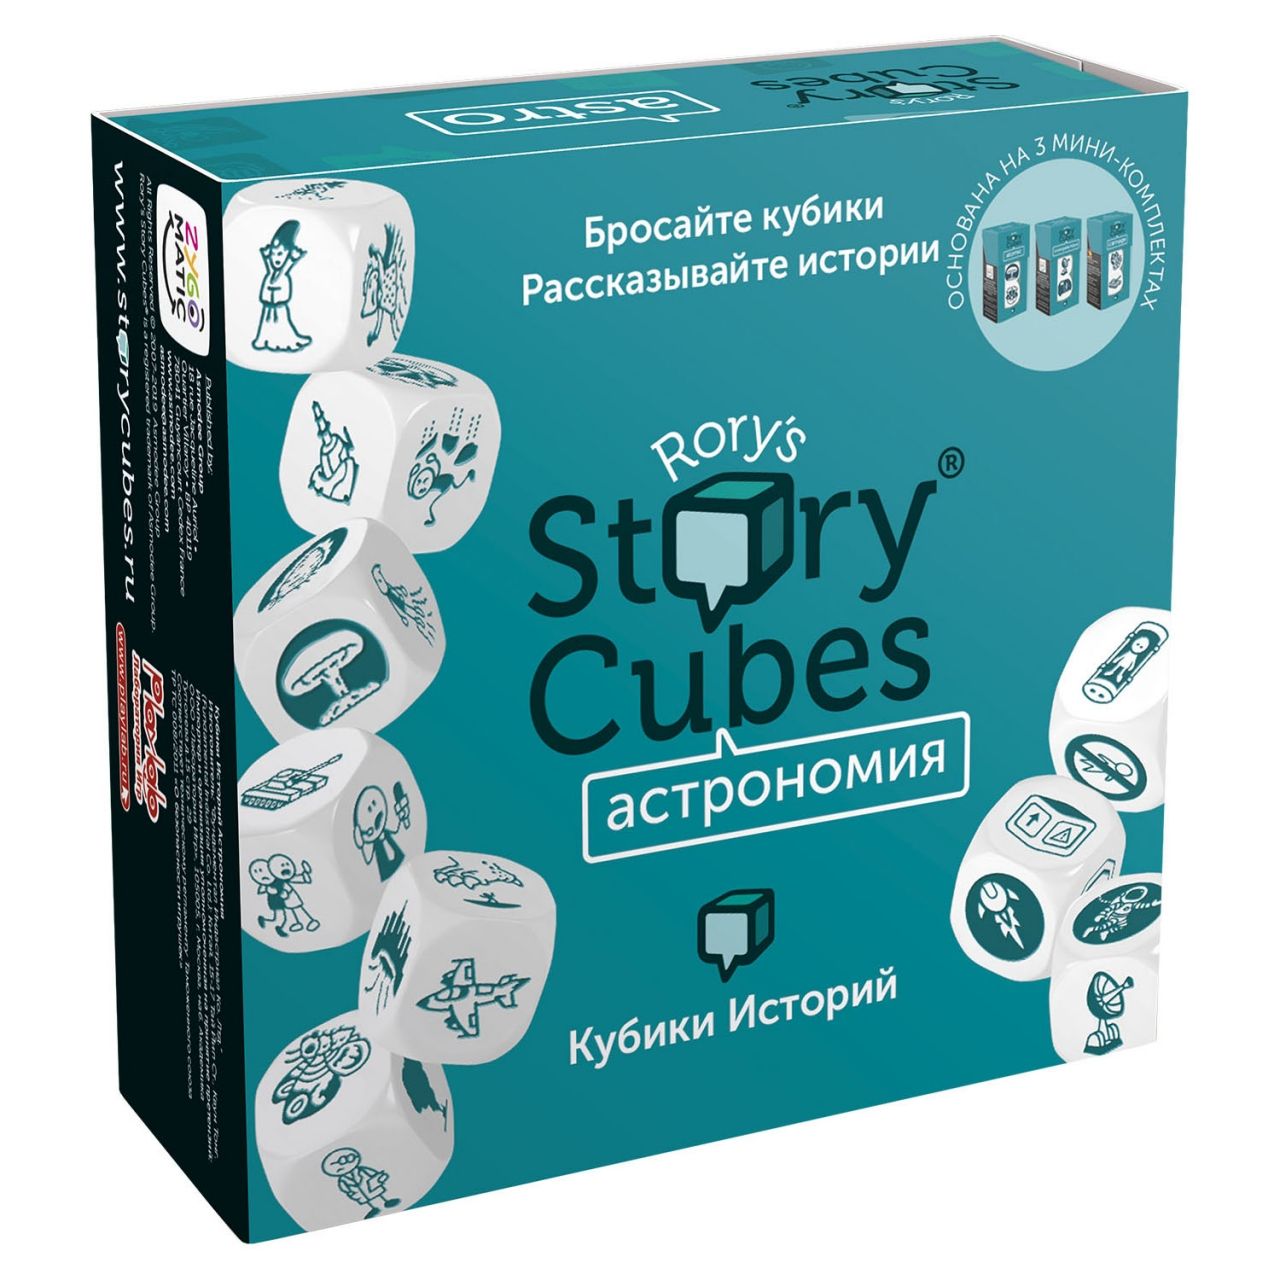 Настольная игра RORYS STORY CUBES RSC31 кубики историй Астрономия настольная игра rubiks кубики историй фантазия